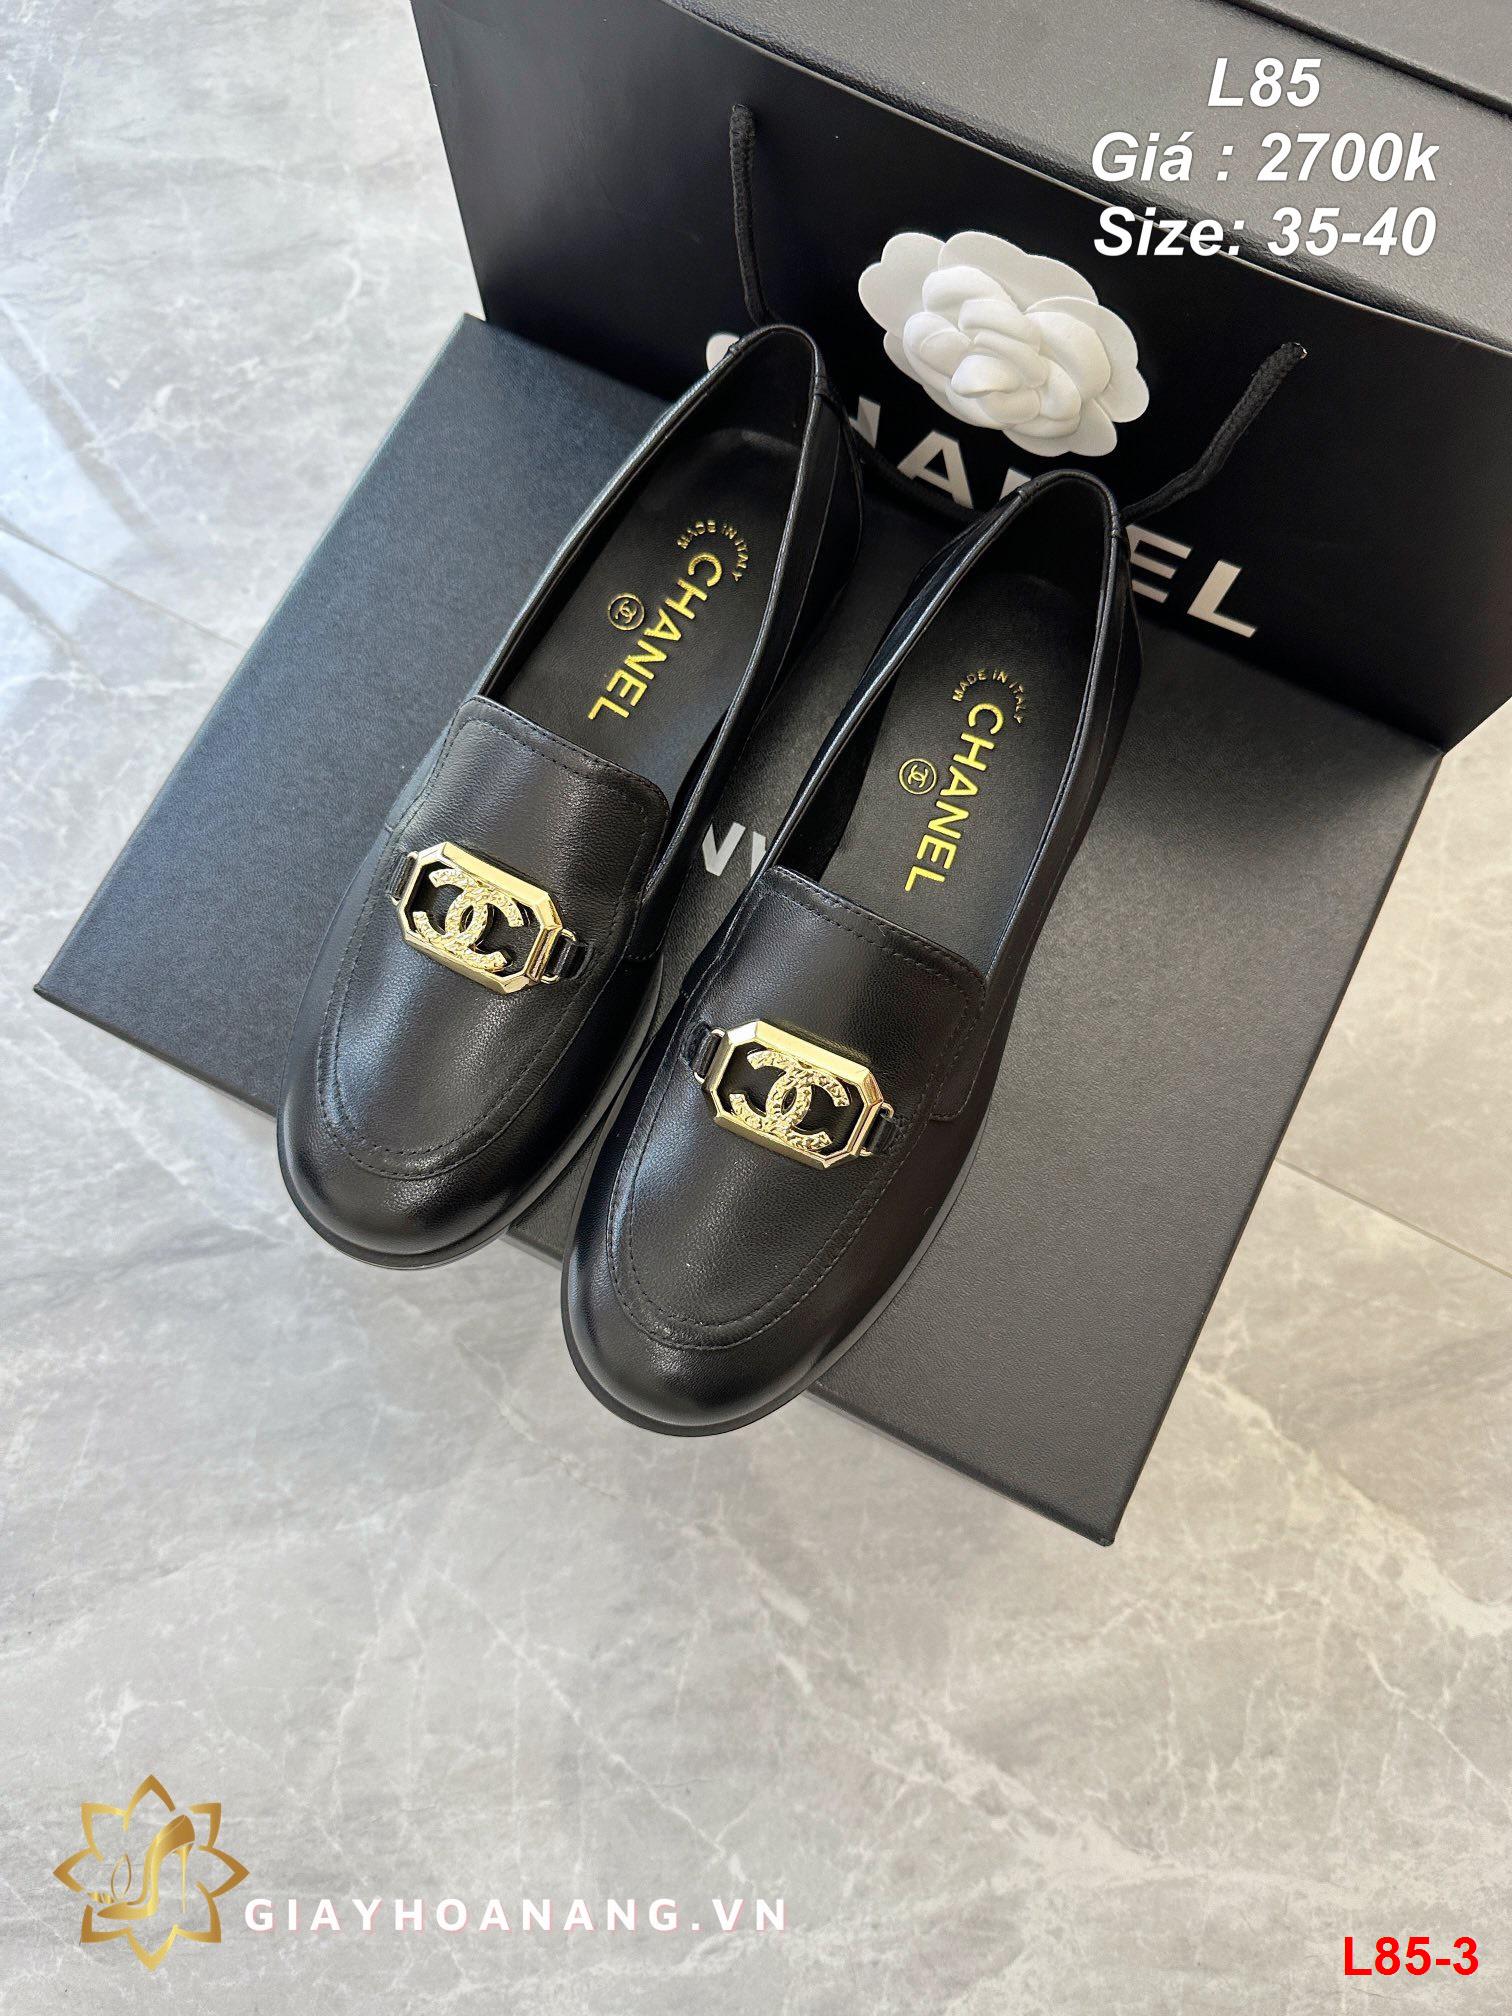 L85-3 Chanel giày lười siêu cấp